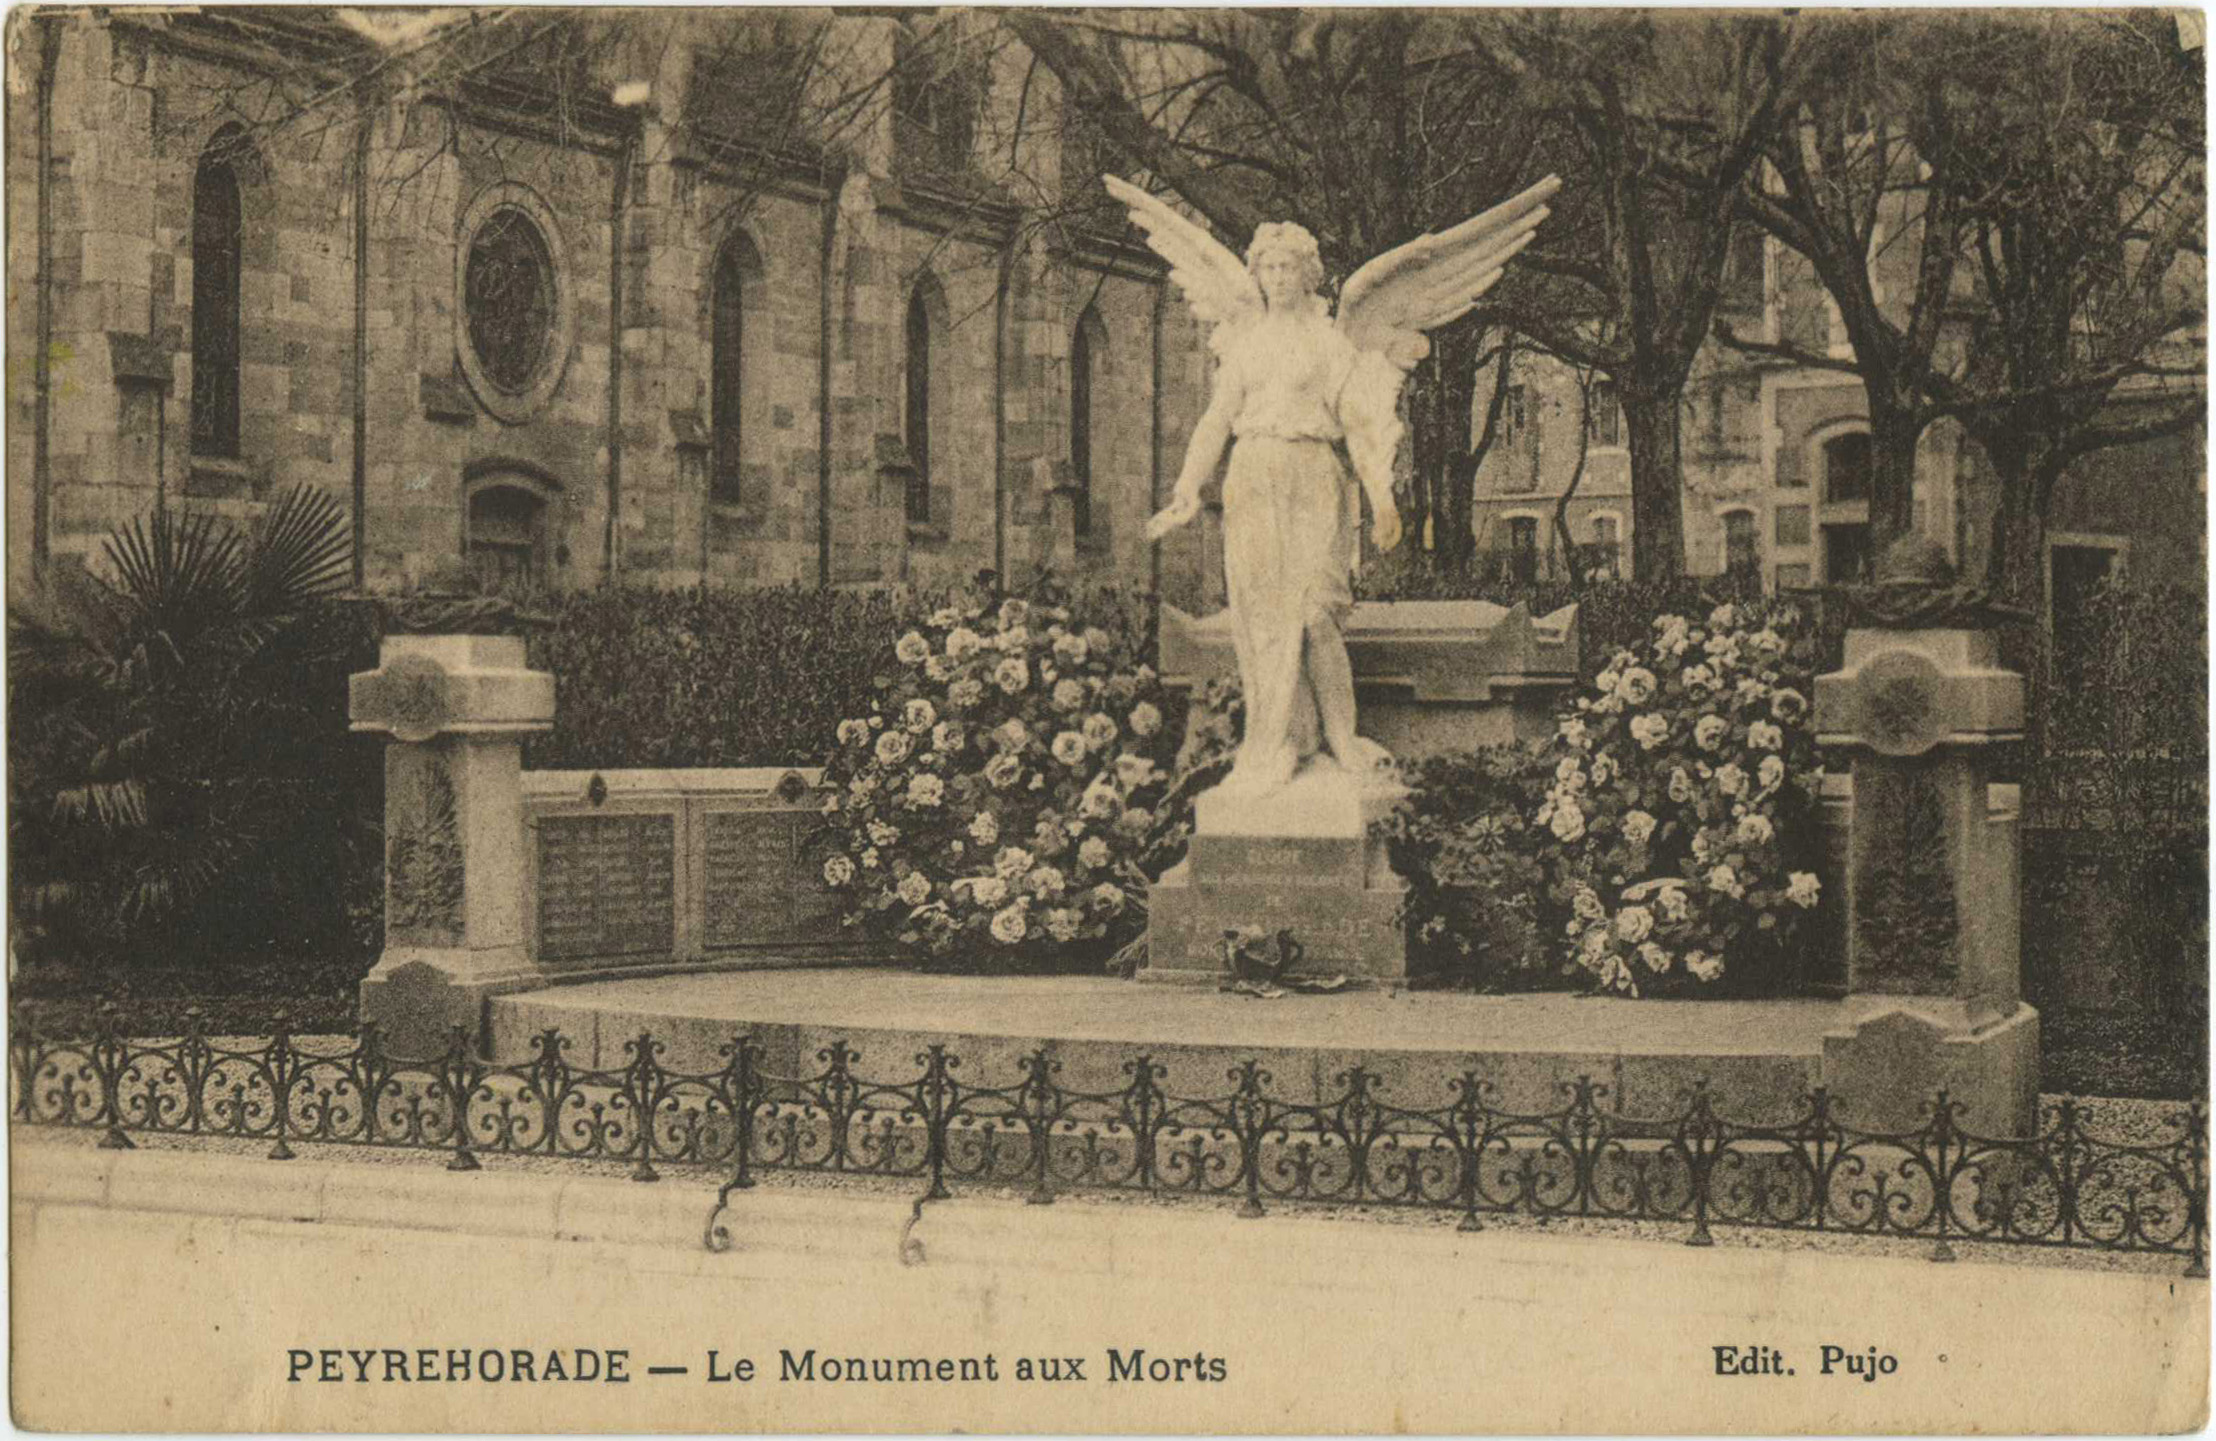 Peyrehorade - Le Monument aux Morts